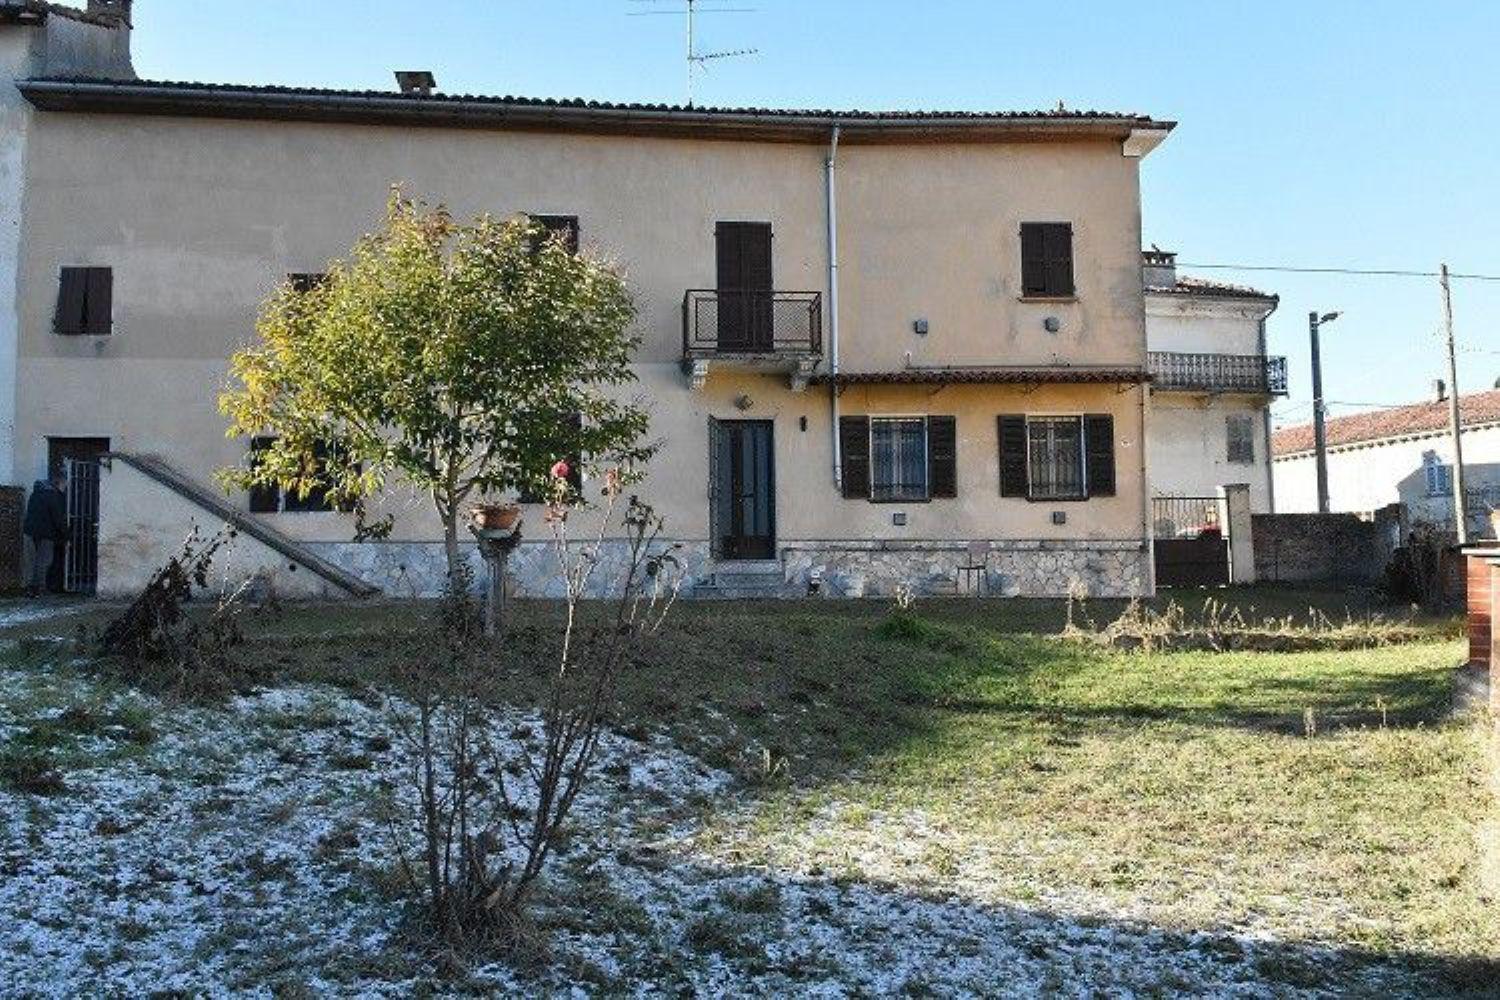 Rustico / Casale in vendita a Camagna Monferrato, 4 locali, prezzo € 84.000 | CambioCasa.it